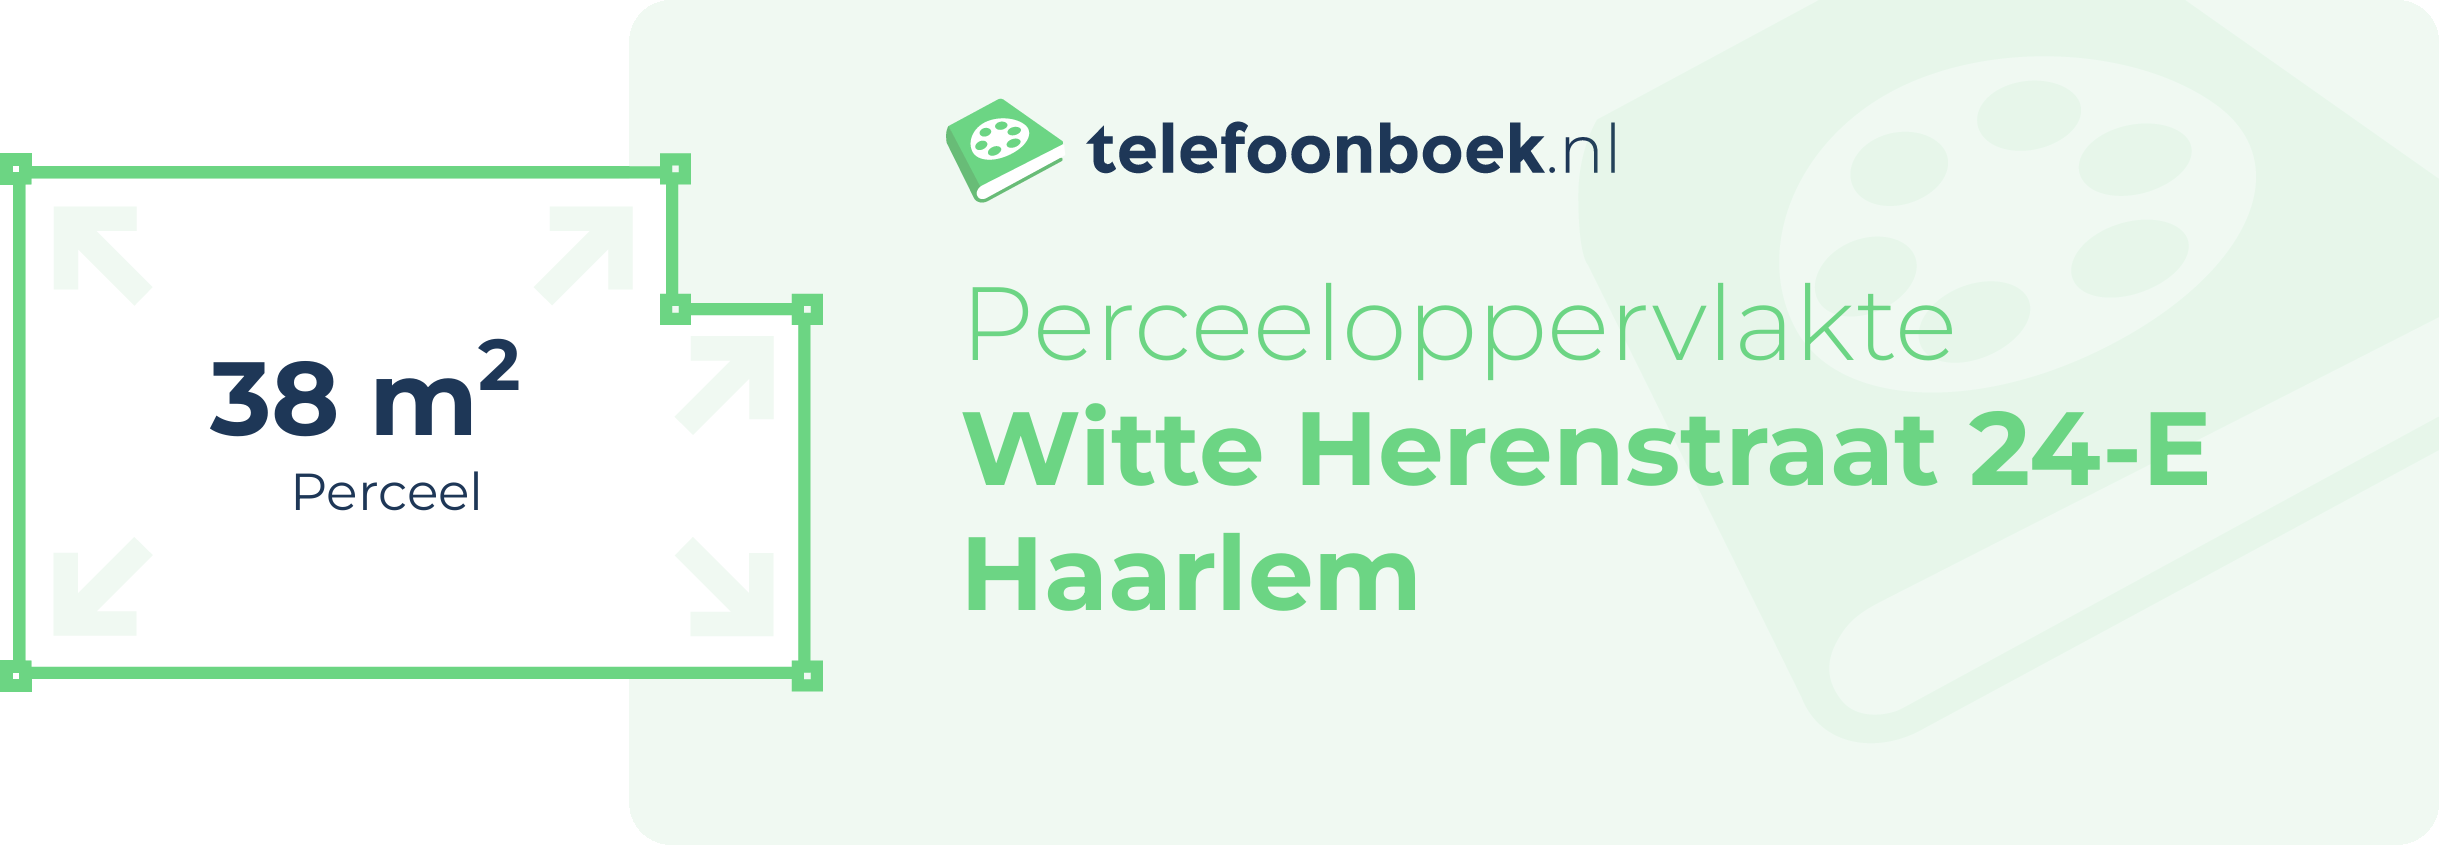 Perceeloppervlakte Witte Herenstraat 24-E Haarlem